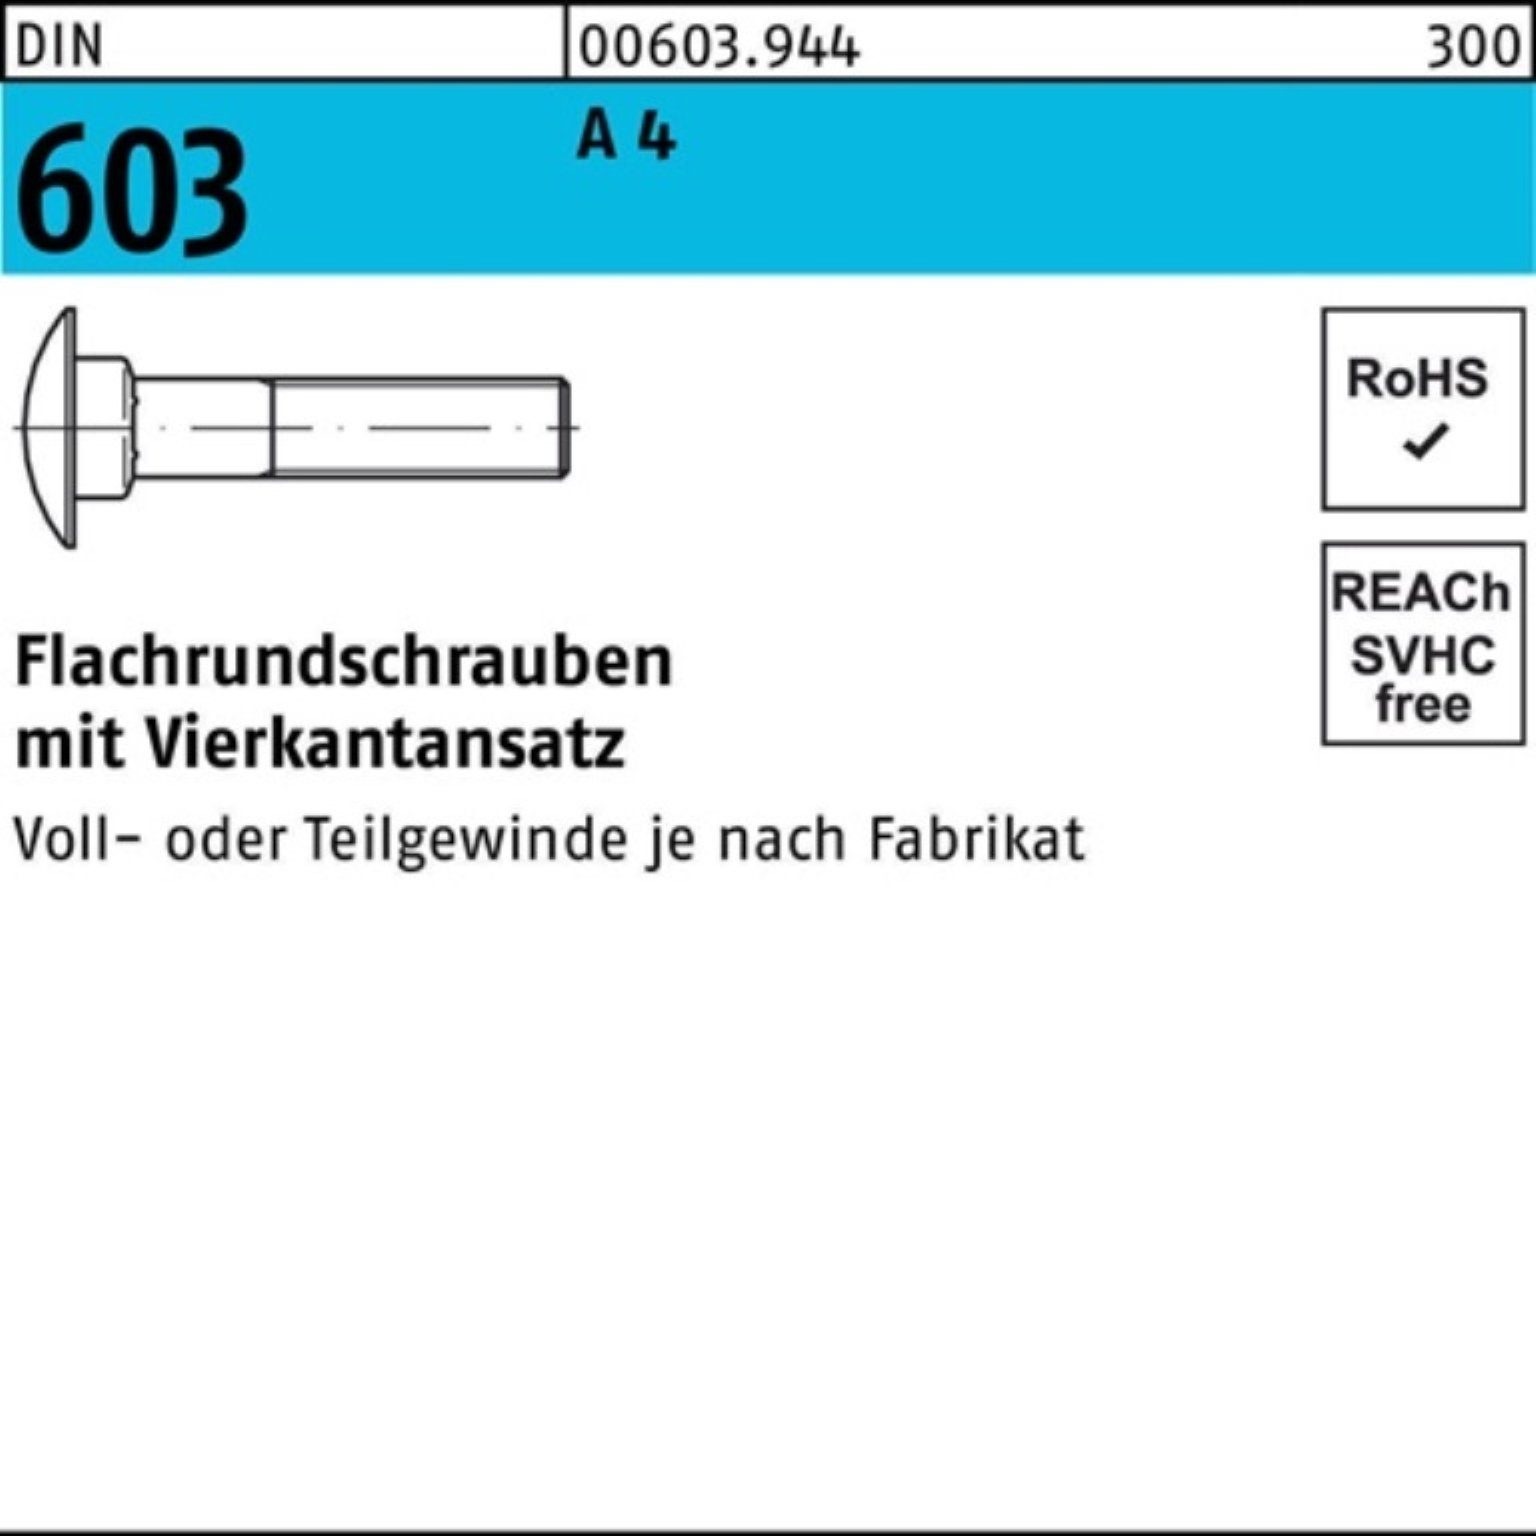 Reyher Schraube 100er Pack Flachrundschraube 80 603 Stü DIN A 1 M12x 4 Vierkantansatz